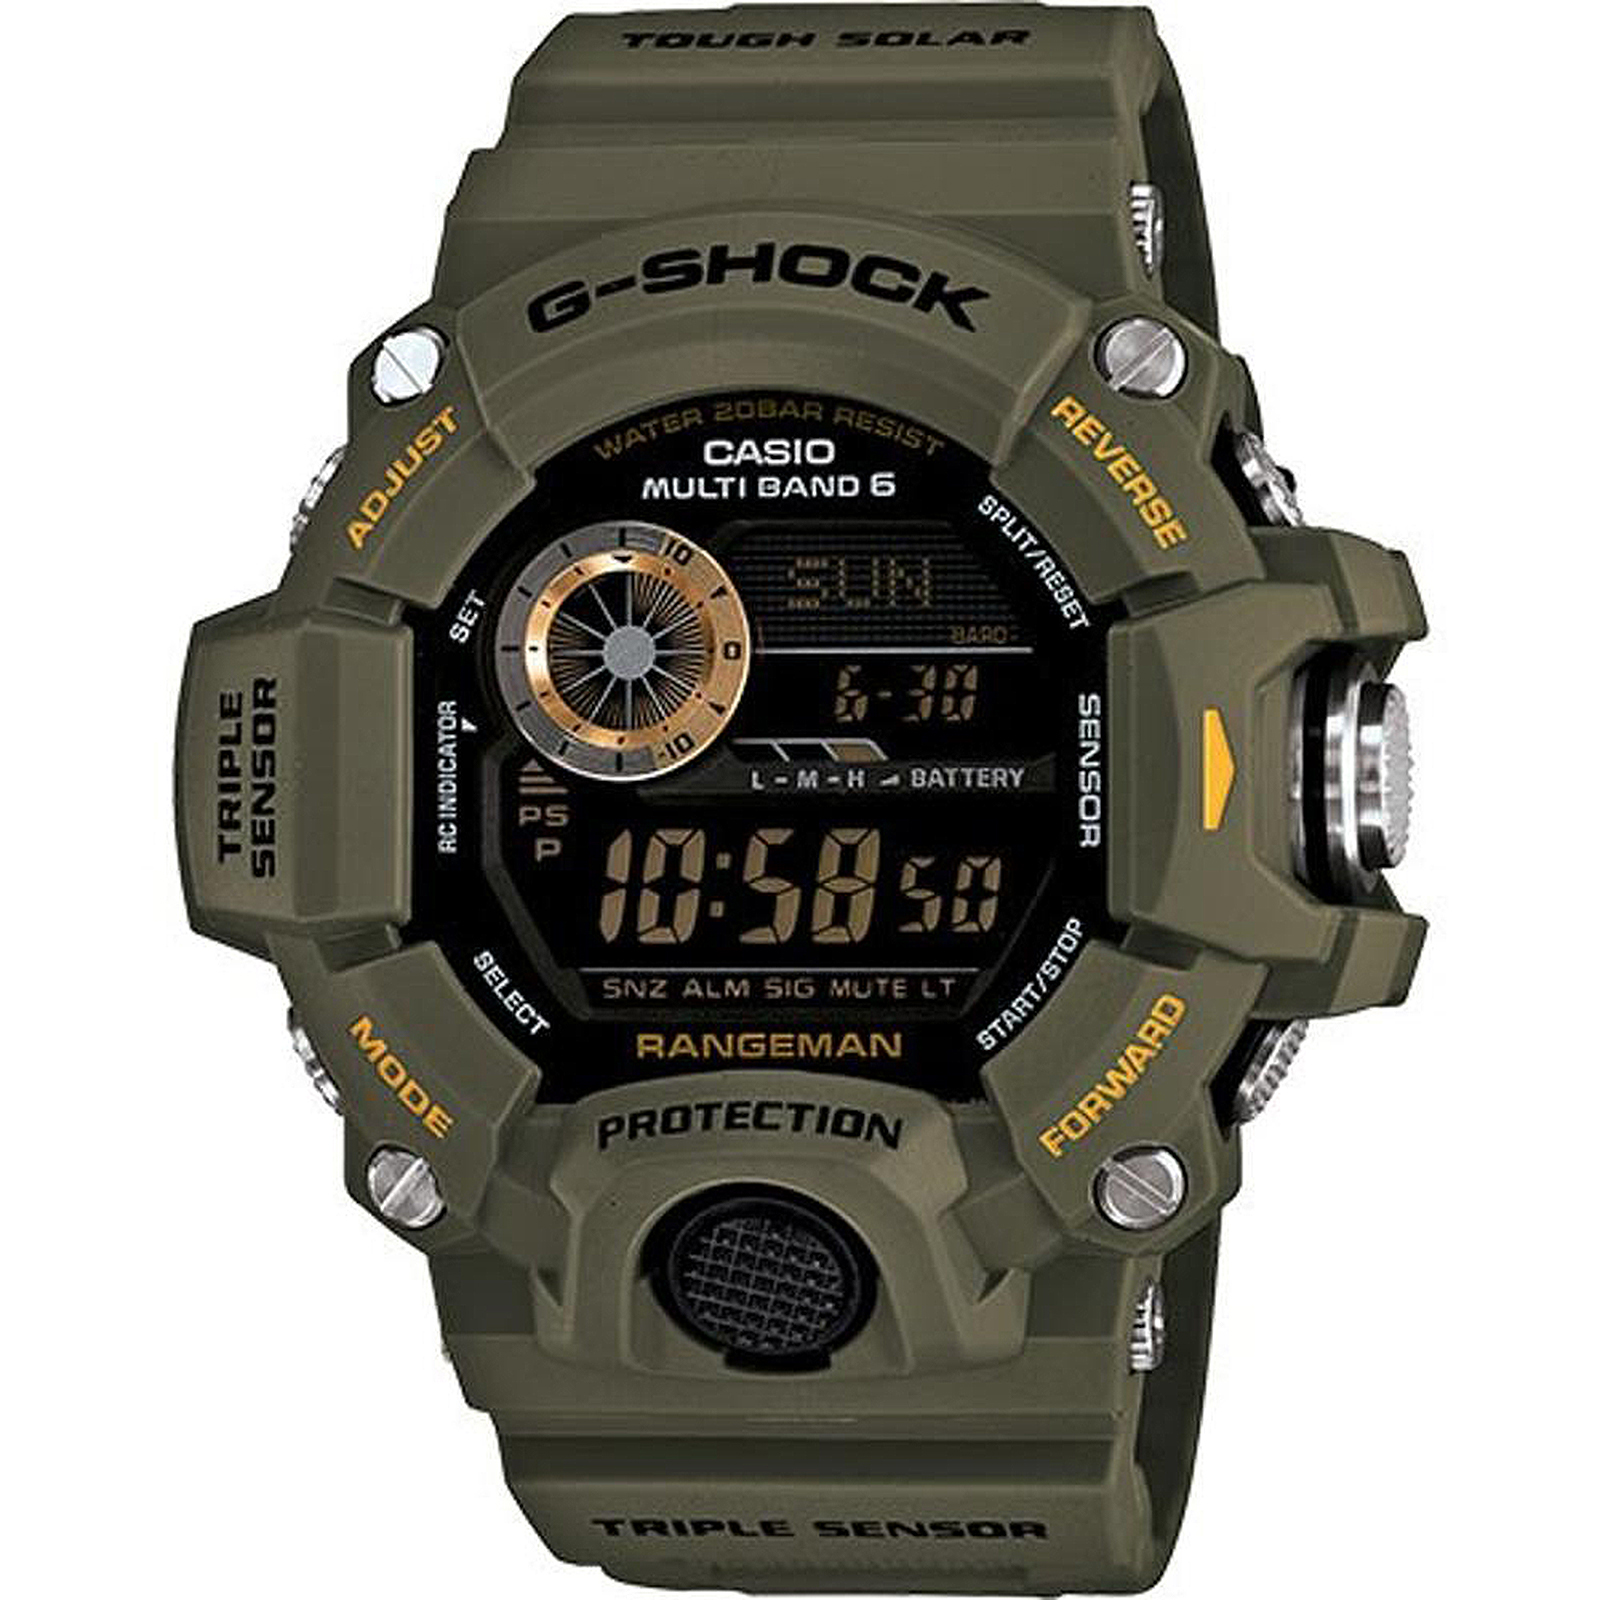 Casio Men's G-Shock Resin Strap Rangeman Digital Watch - Green